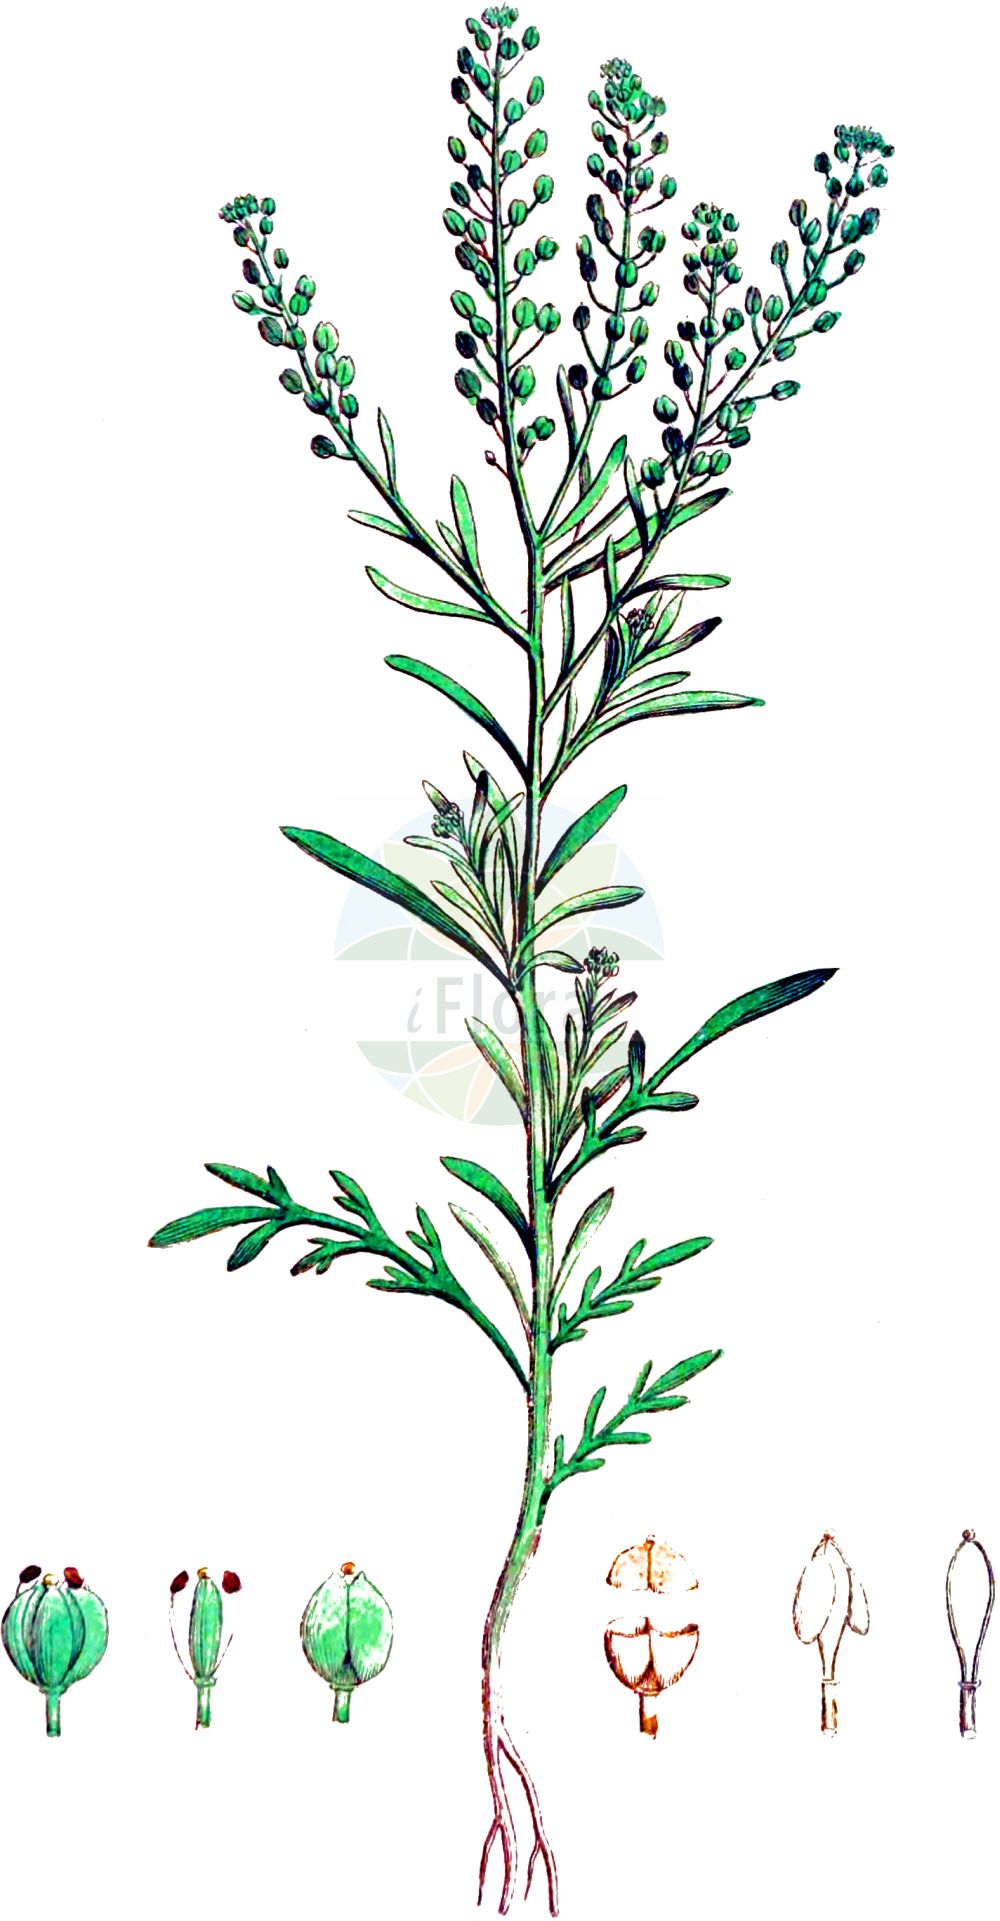 Historische Abbildung von Lepidium ruderale (Schutt-Kresse - Narrow-leaved Pepperwort). Das Bild zeigt Blatt, Bluete, Frucht und Same. ---- Historical Drawing of Lepidium ruderale (Schutt-Kresse - Narrow-leaved Pepperwort). The image is showing leaf, flower, fruit and seed.(Lepidium ruderale,Schutt-Kresse,Narrow-leaved Pepperwort,Lepidium ambiguum,Lepidium ruderale,Schutt-Kresse,Weg-Kresse,Narrow-leaved Pepperwort,Narrow-leaf Pepperweed,Roadside Pepperweed,Narrow-leaved Cress,Peppercress,Rubbish Pepperwort,Lepidium,Kresse,Pepperweed,Brassicaceae,Kreuzblütler,Cabbage family,Blatt,Bluete,Frucht,Same,leaf,flower,fruit,seed,Svensk Botanik (Svensk Botanik))